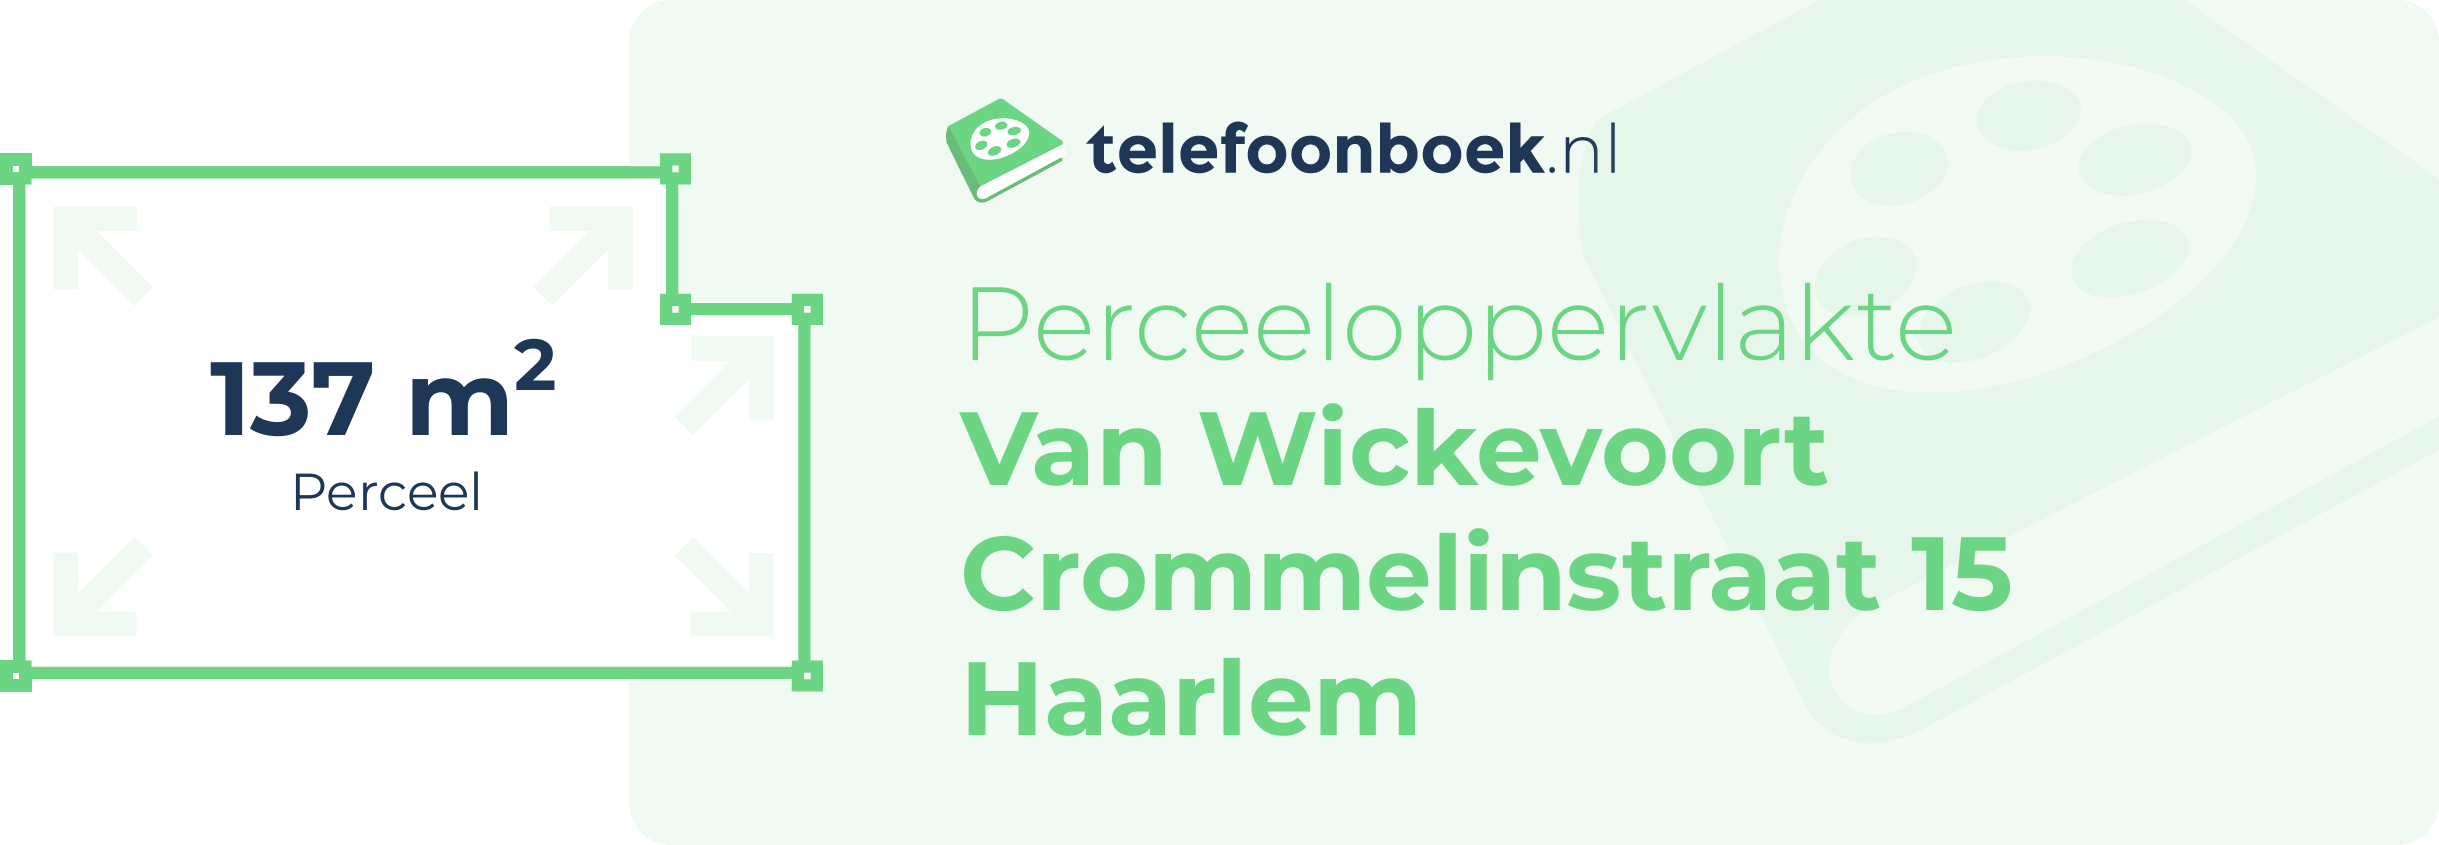 Perceeloppervlakte Van Wickevoort Crommelinstraat 15 Haarlem